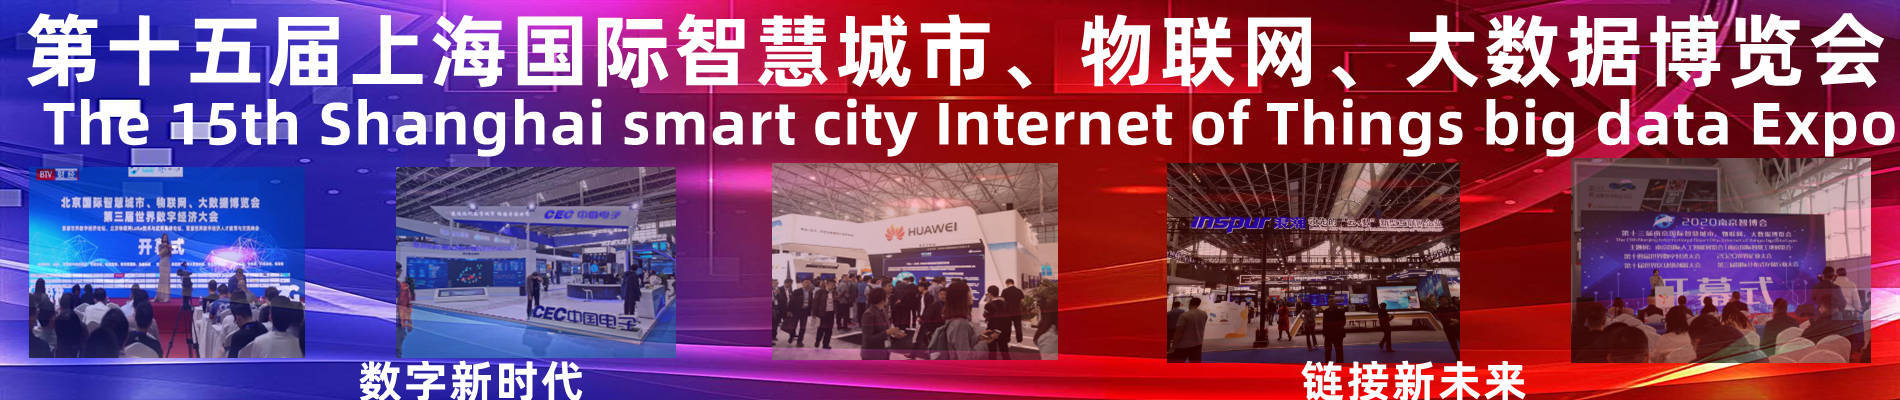 023上海国际大数据产业博览会|数博会"